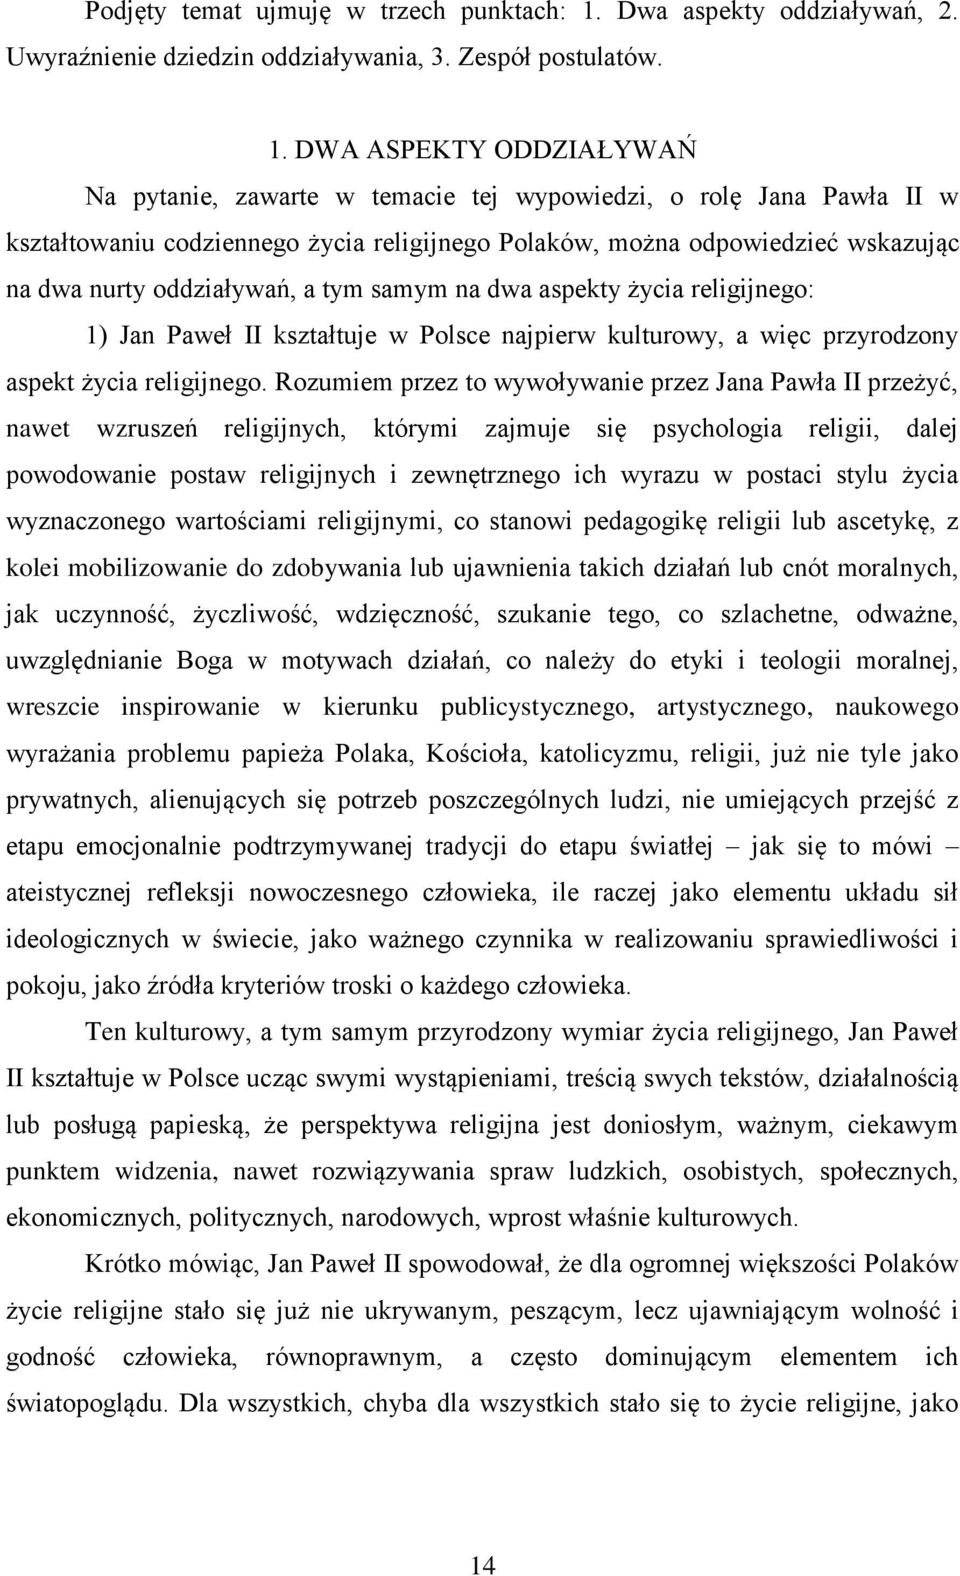 DWA ASPEKTY ODDZIAŁYWAŃ Na pytanie, zawarte w temacie tej wypowiedzi, o rolę Jana Pawła II w kształtowaniu codziennego życia religijnego Polaków, można odpowiedzieć wskazując na dwa nurty